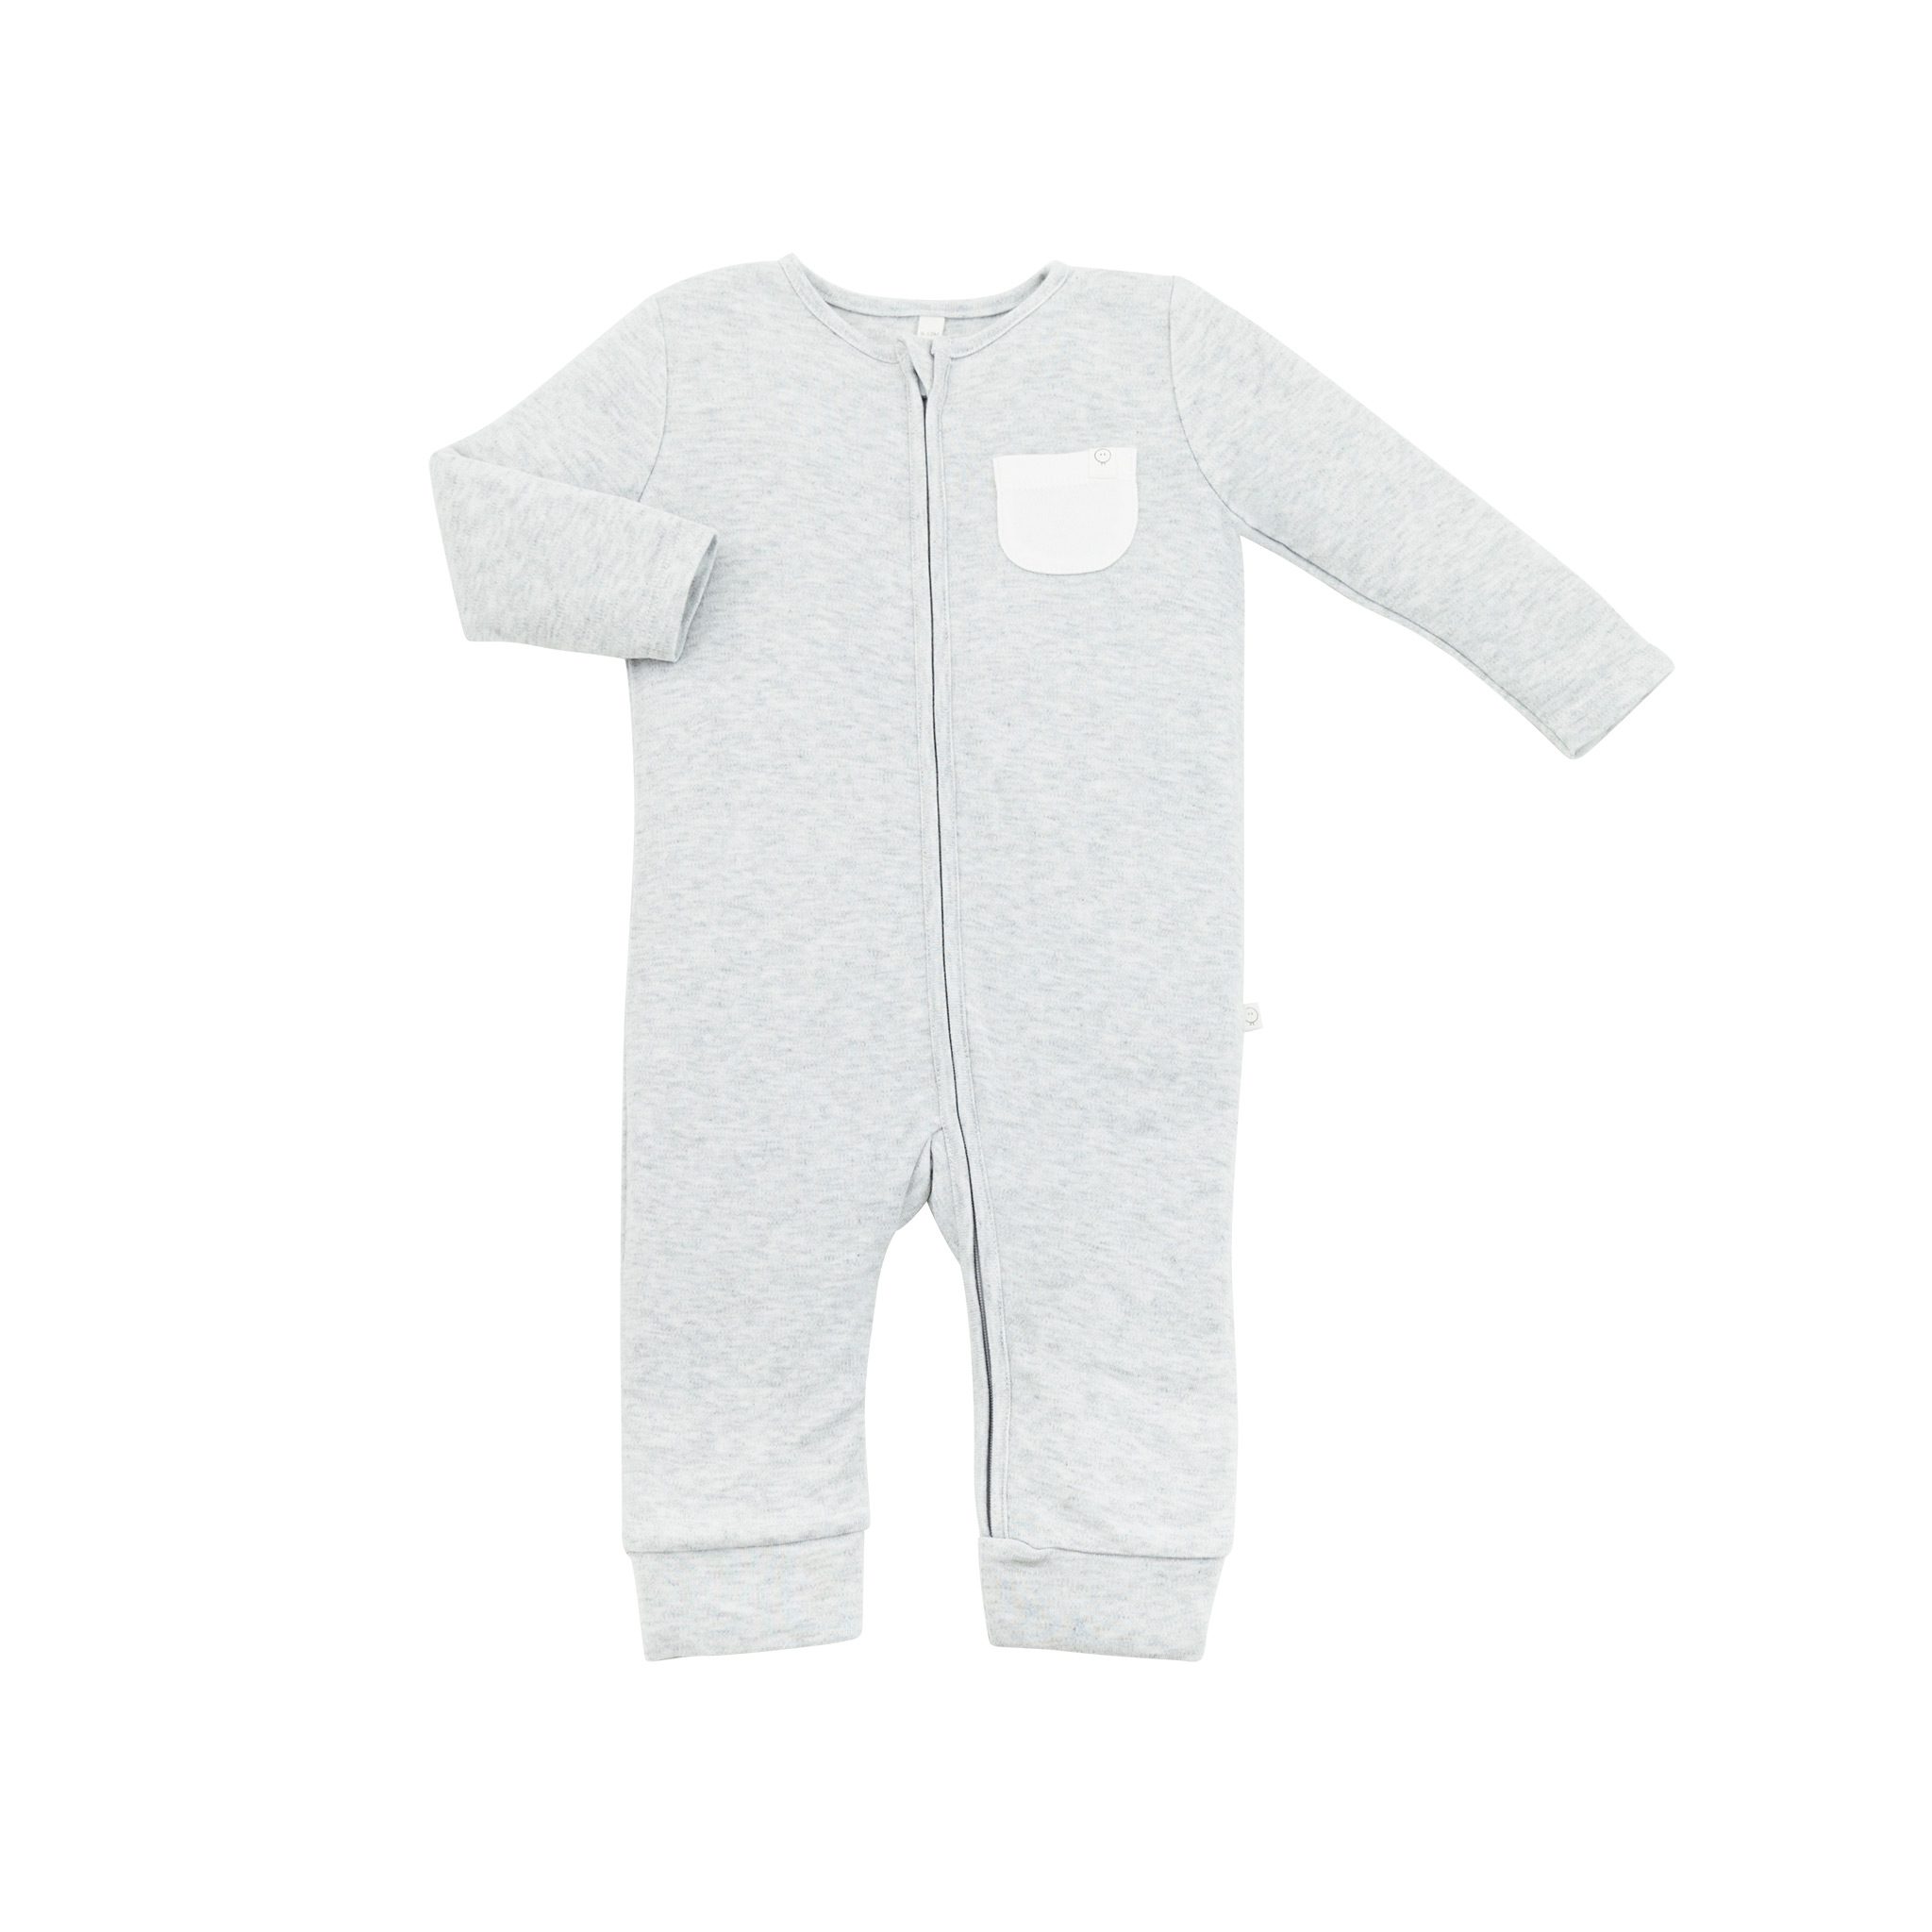 Mikä muu vaate on kosketuksissa vauvan ihoa vasten enemmän kuin pyjama? Pienet vauvat nukkuvat melkein koko ajan, siksi juuri pyjamaan kannattaa panostaa. Baby MORI pyjamassa yhdistyy puhtaan luomulaatuiset, ennennäkemättömän pehmeät kankaat sekä ajattoman tyylikäs design.